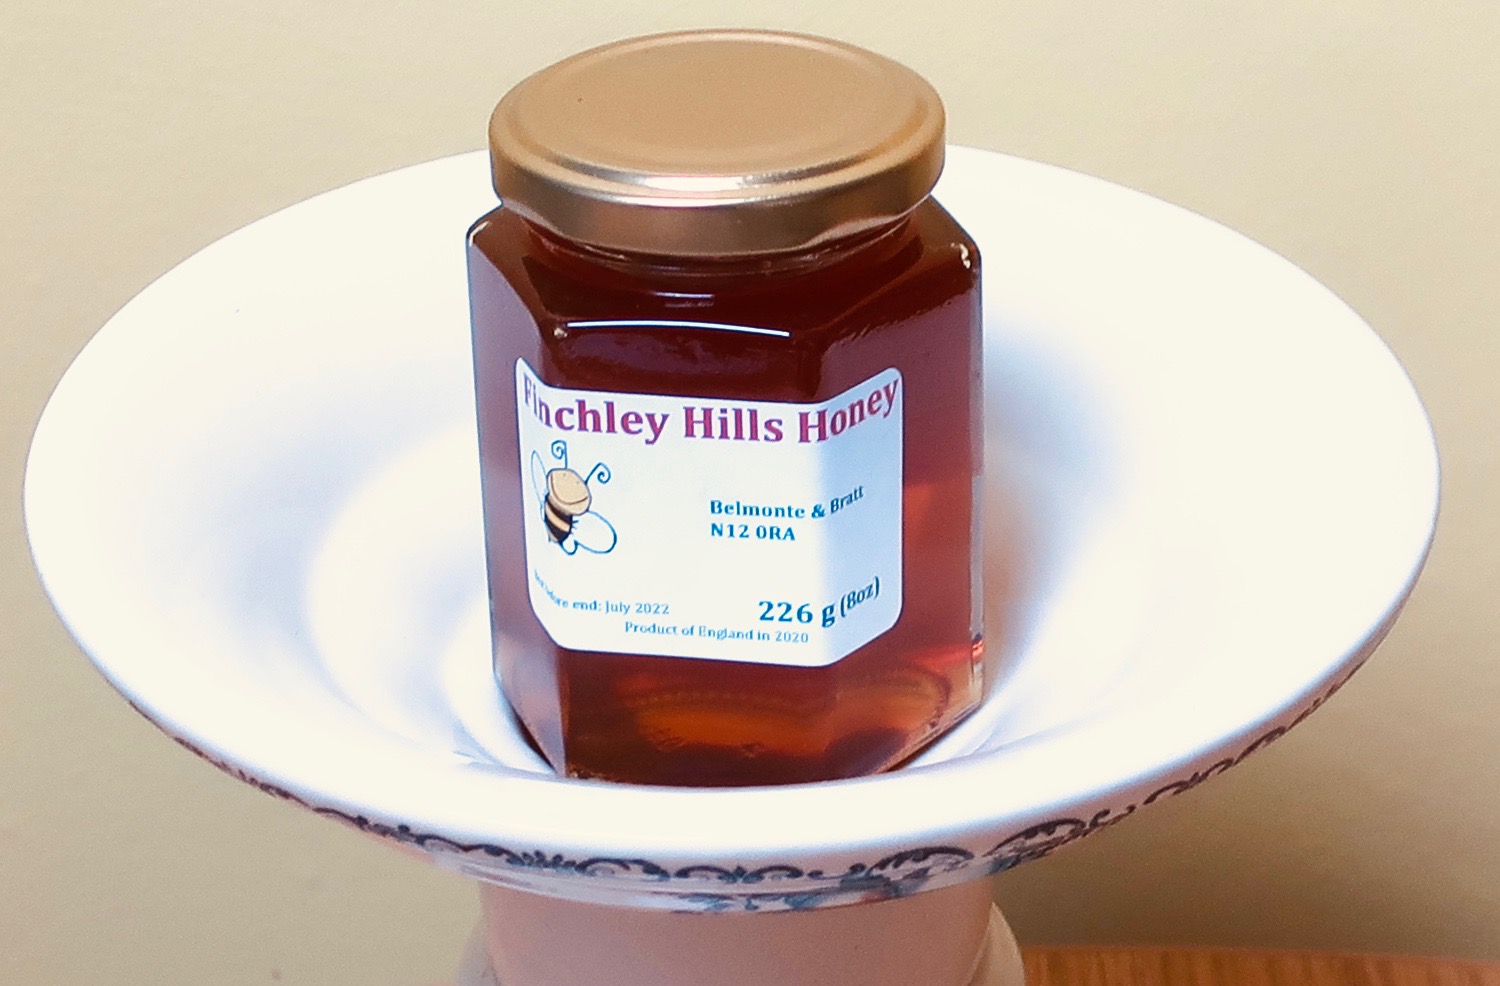 Finchley Hills Honey